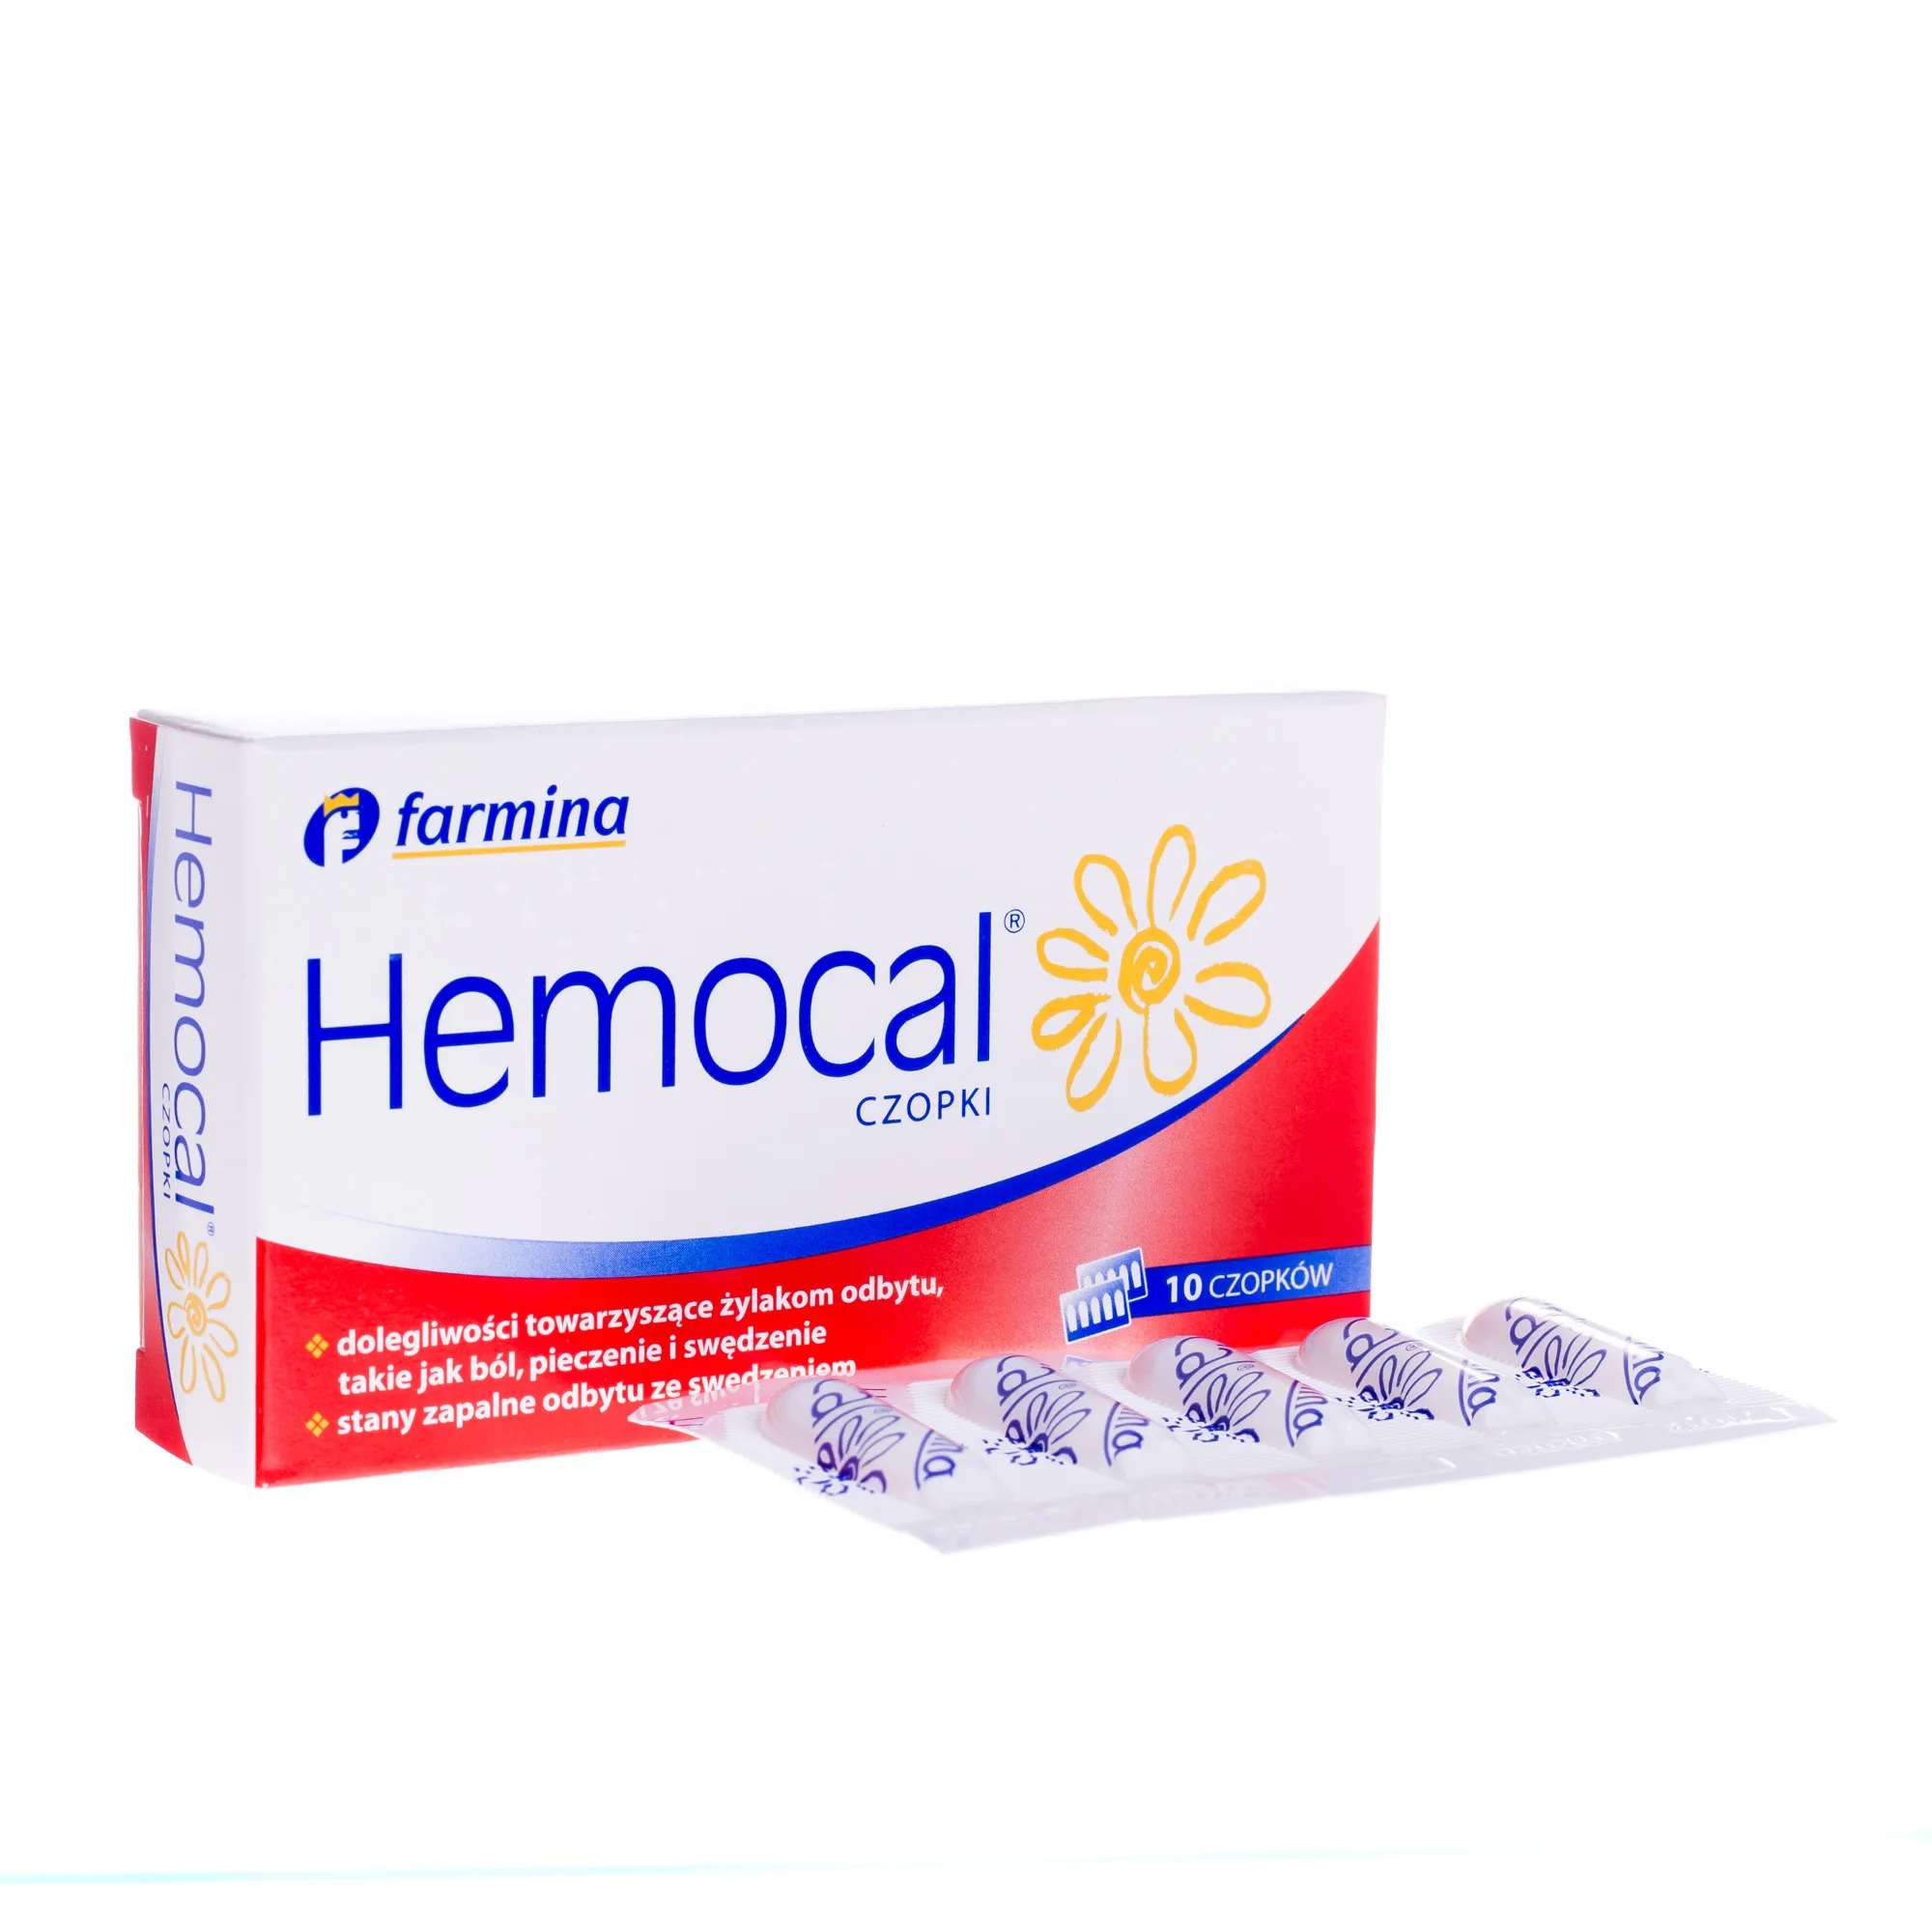 Hemocal Czopki, lek stosowany przy żylakach odbytu, 10 czopków